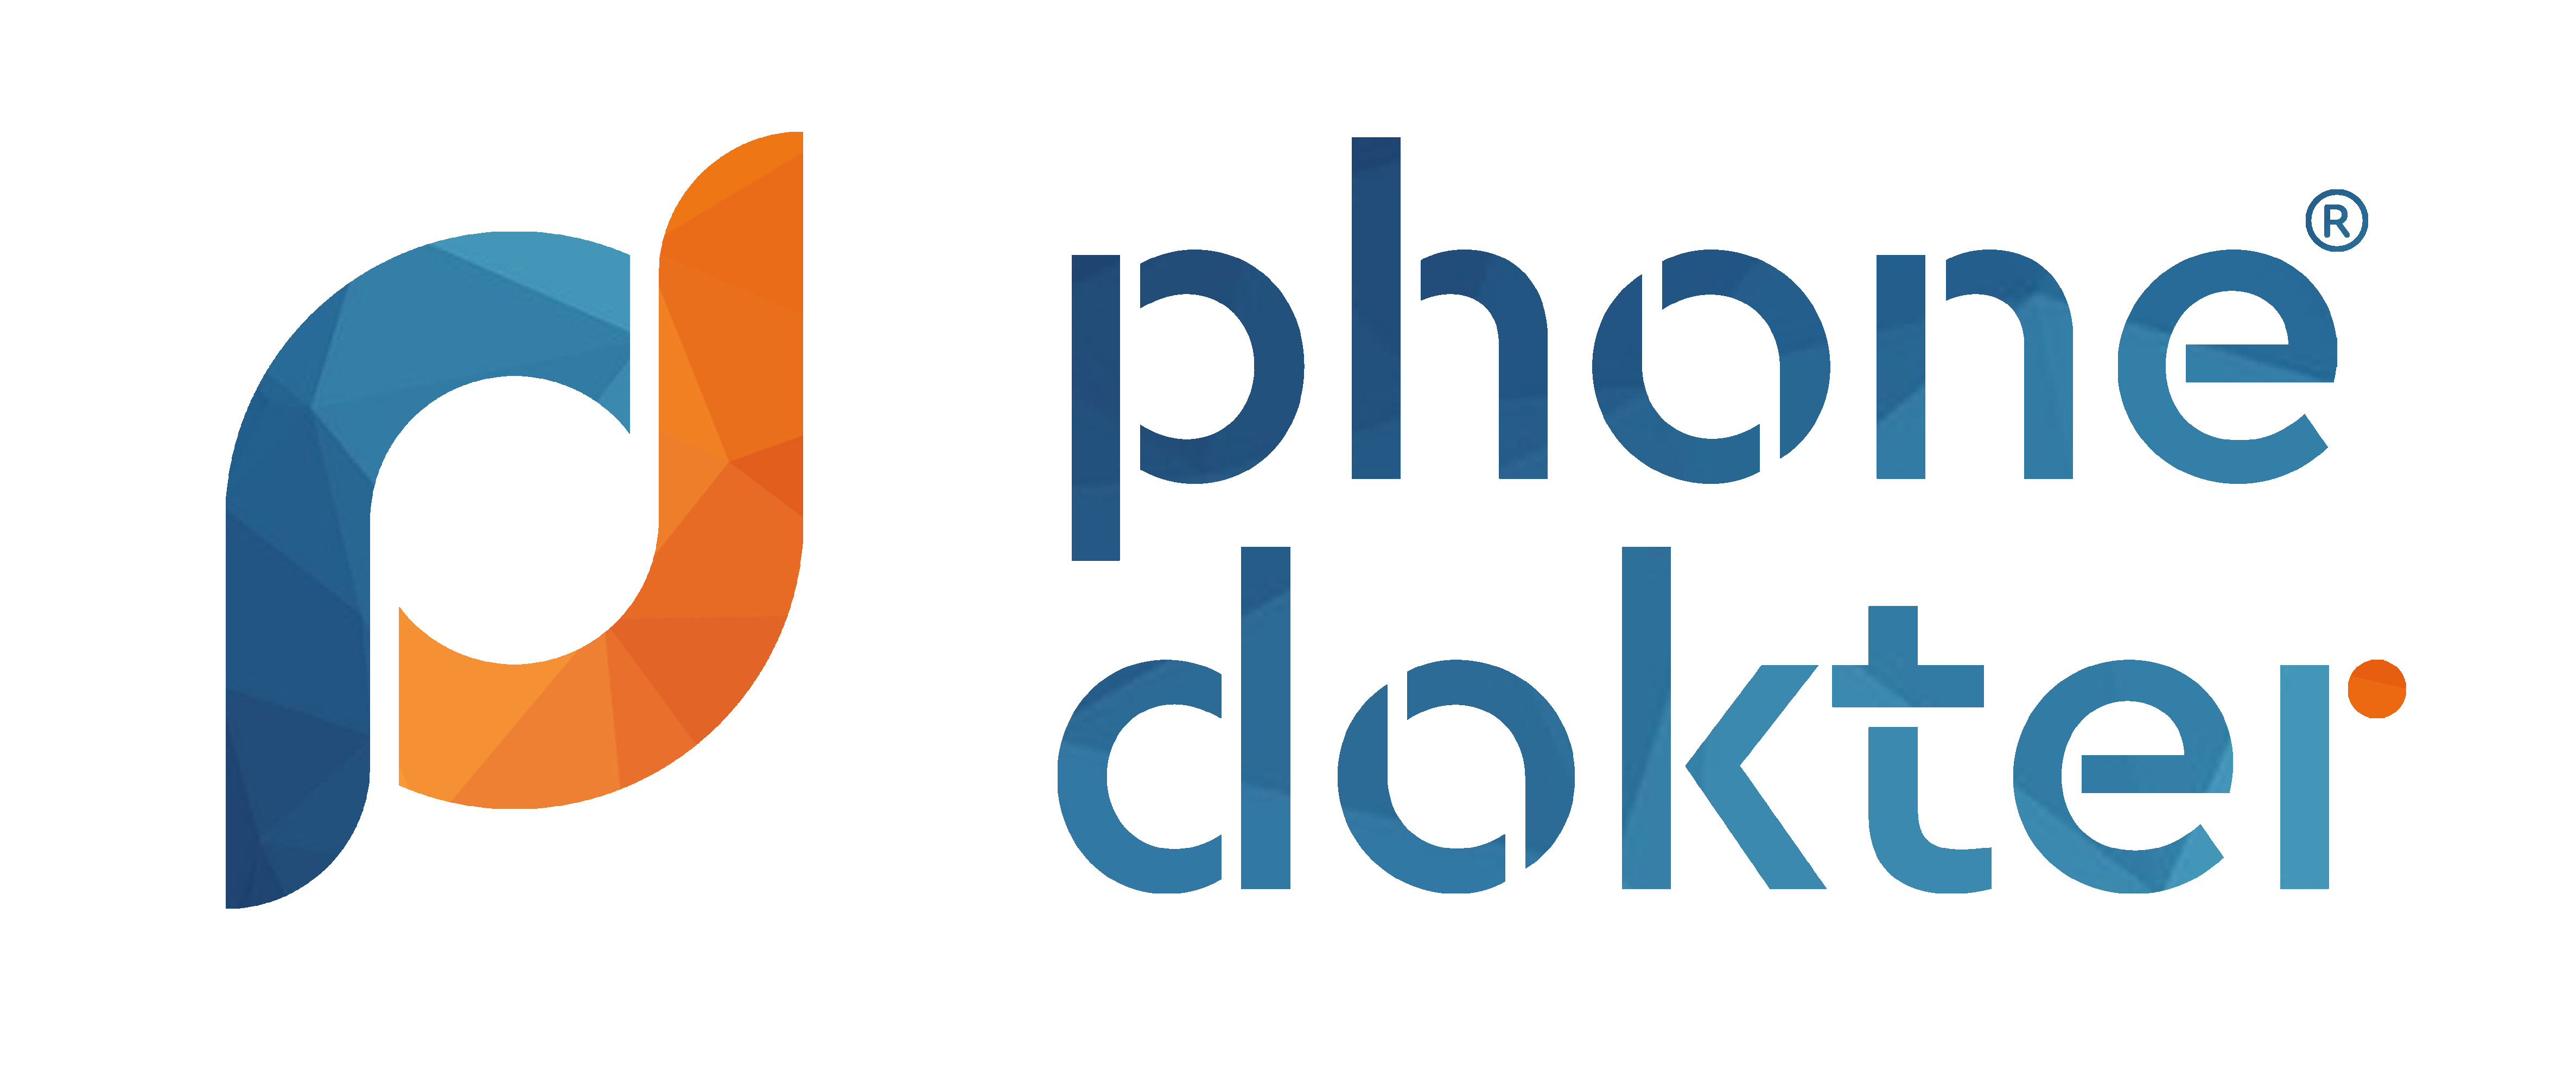 Bezoek PhoneDokter.nl